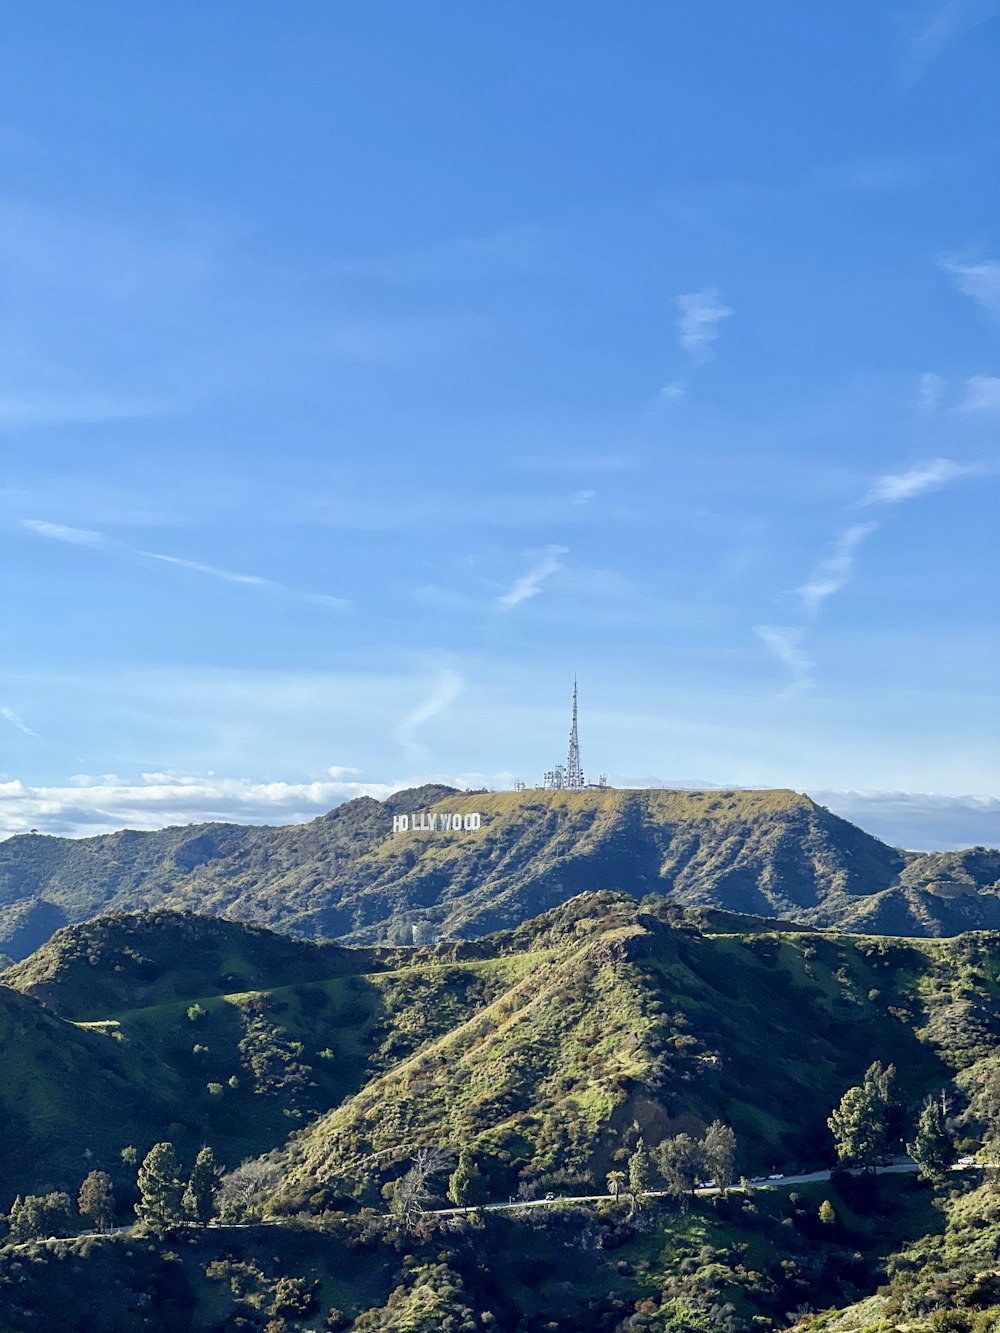 une vue panoramique d’une montagne avec une tour radio au loin